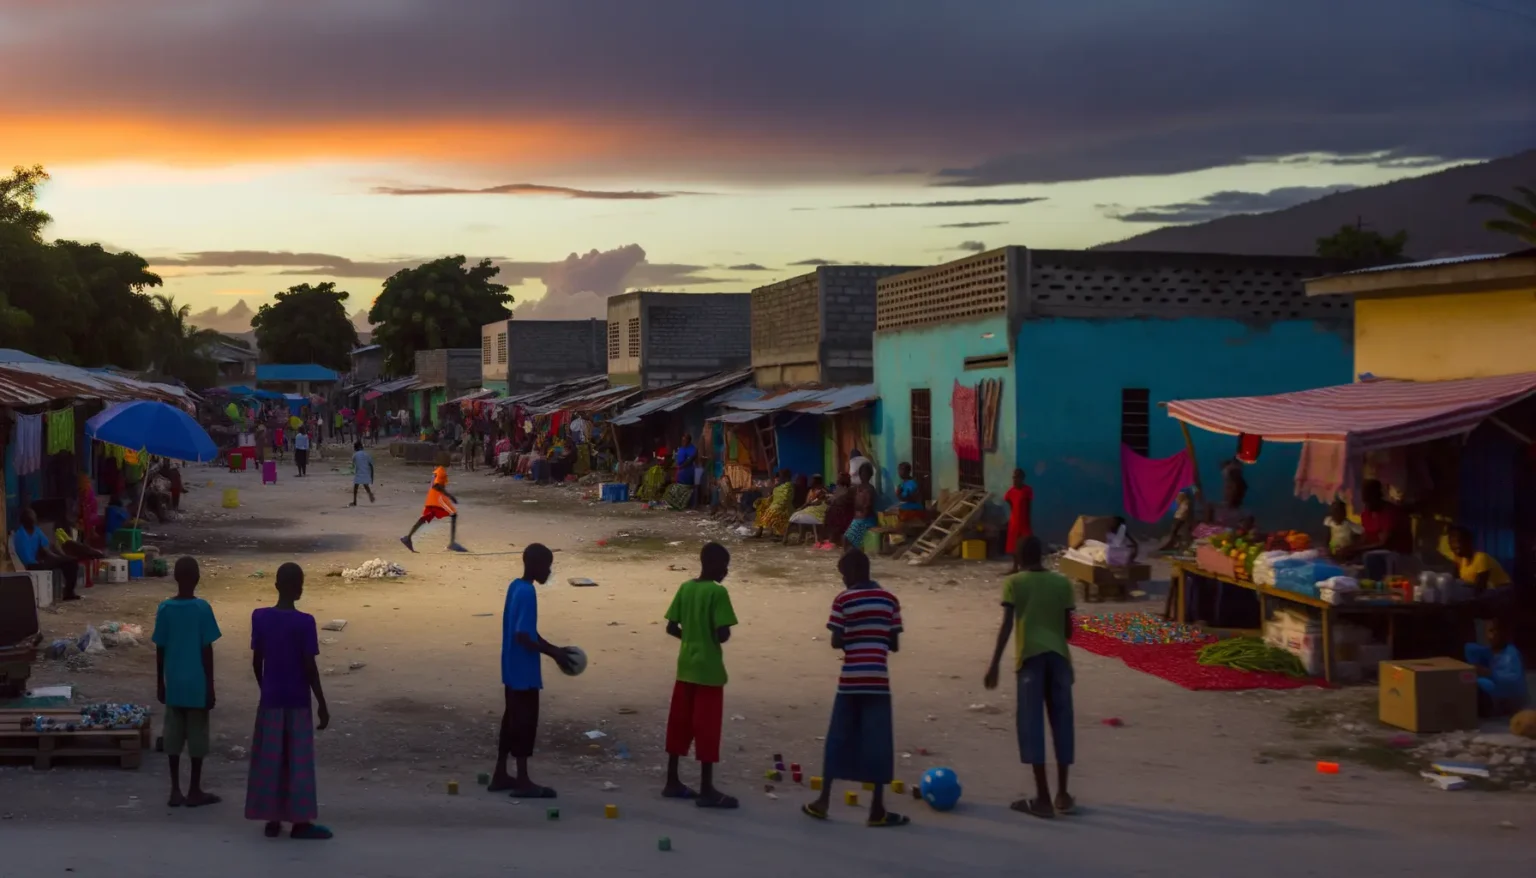 Eine belebte Straße in einem Dorf bei Sonnenuntergang mit Menschen, die sich unterhalten, spazieren gehen und auf einem staubigen Platz Fußball spielen. Die bunten Fassaden der Häuser und Marktstände mit Waren bieten einen farbenfrohen Kontrast zum dramatisch gefärbten Himmel im Hintergrund.